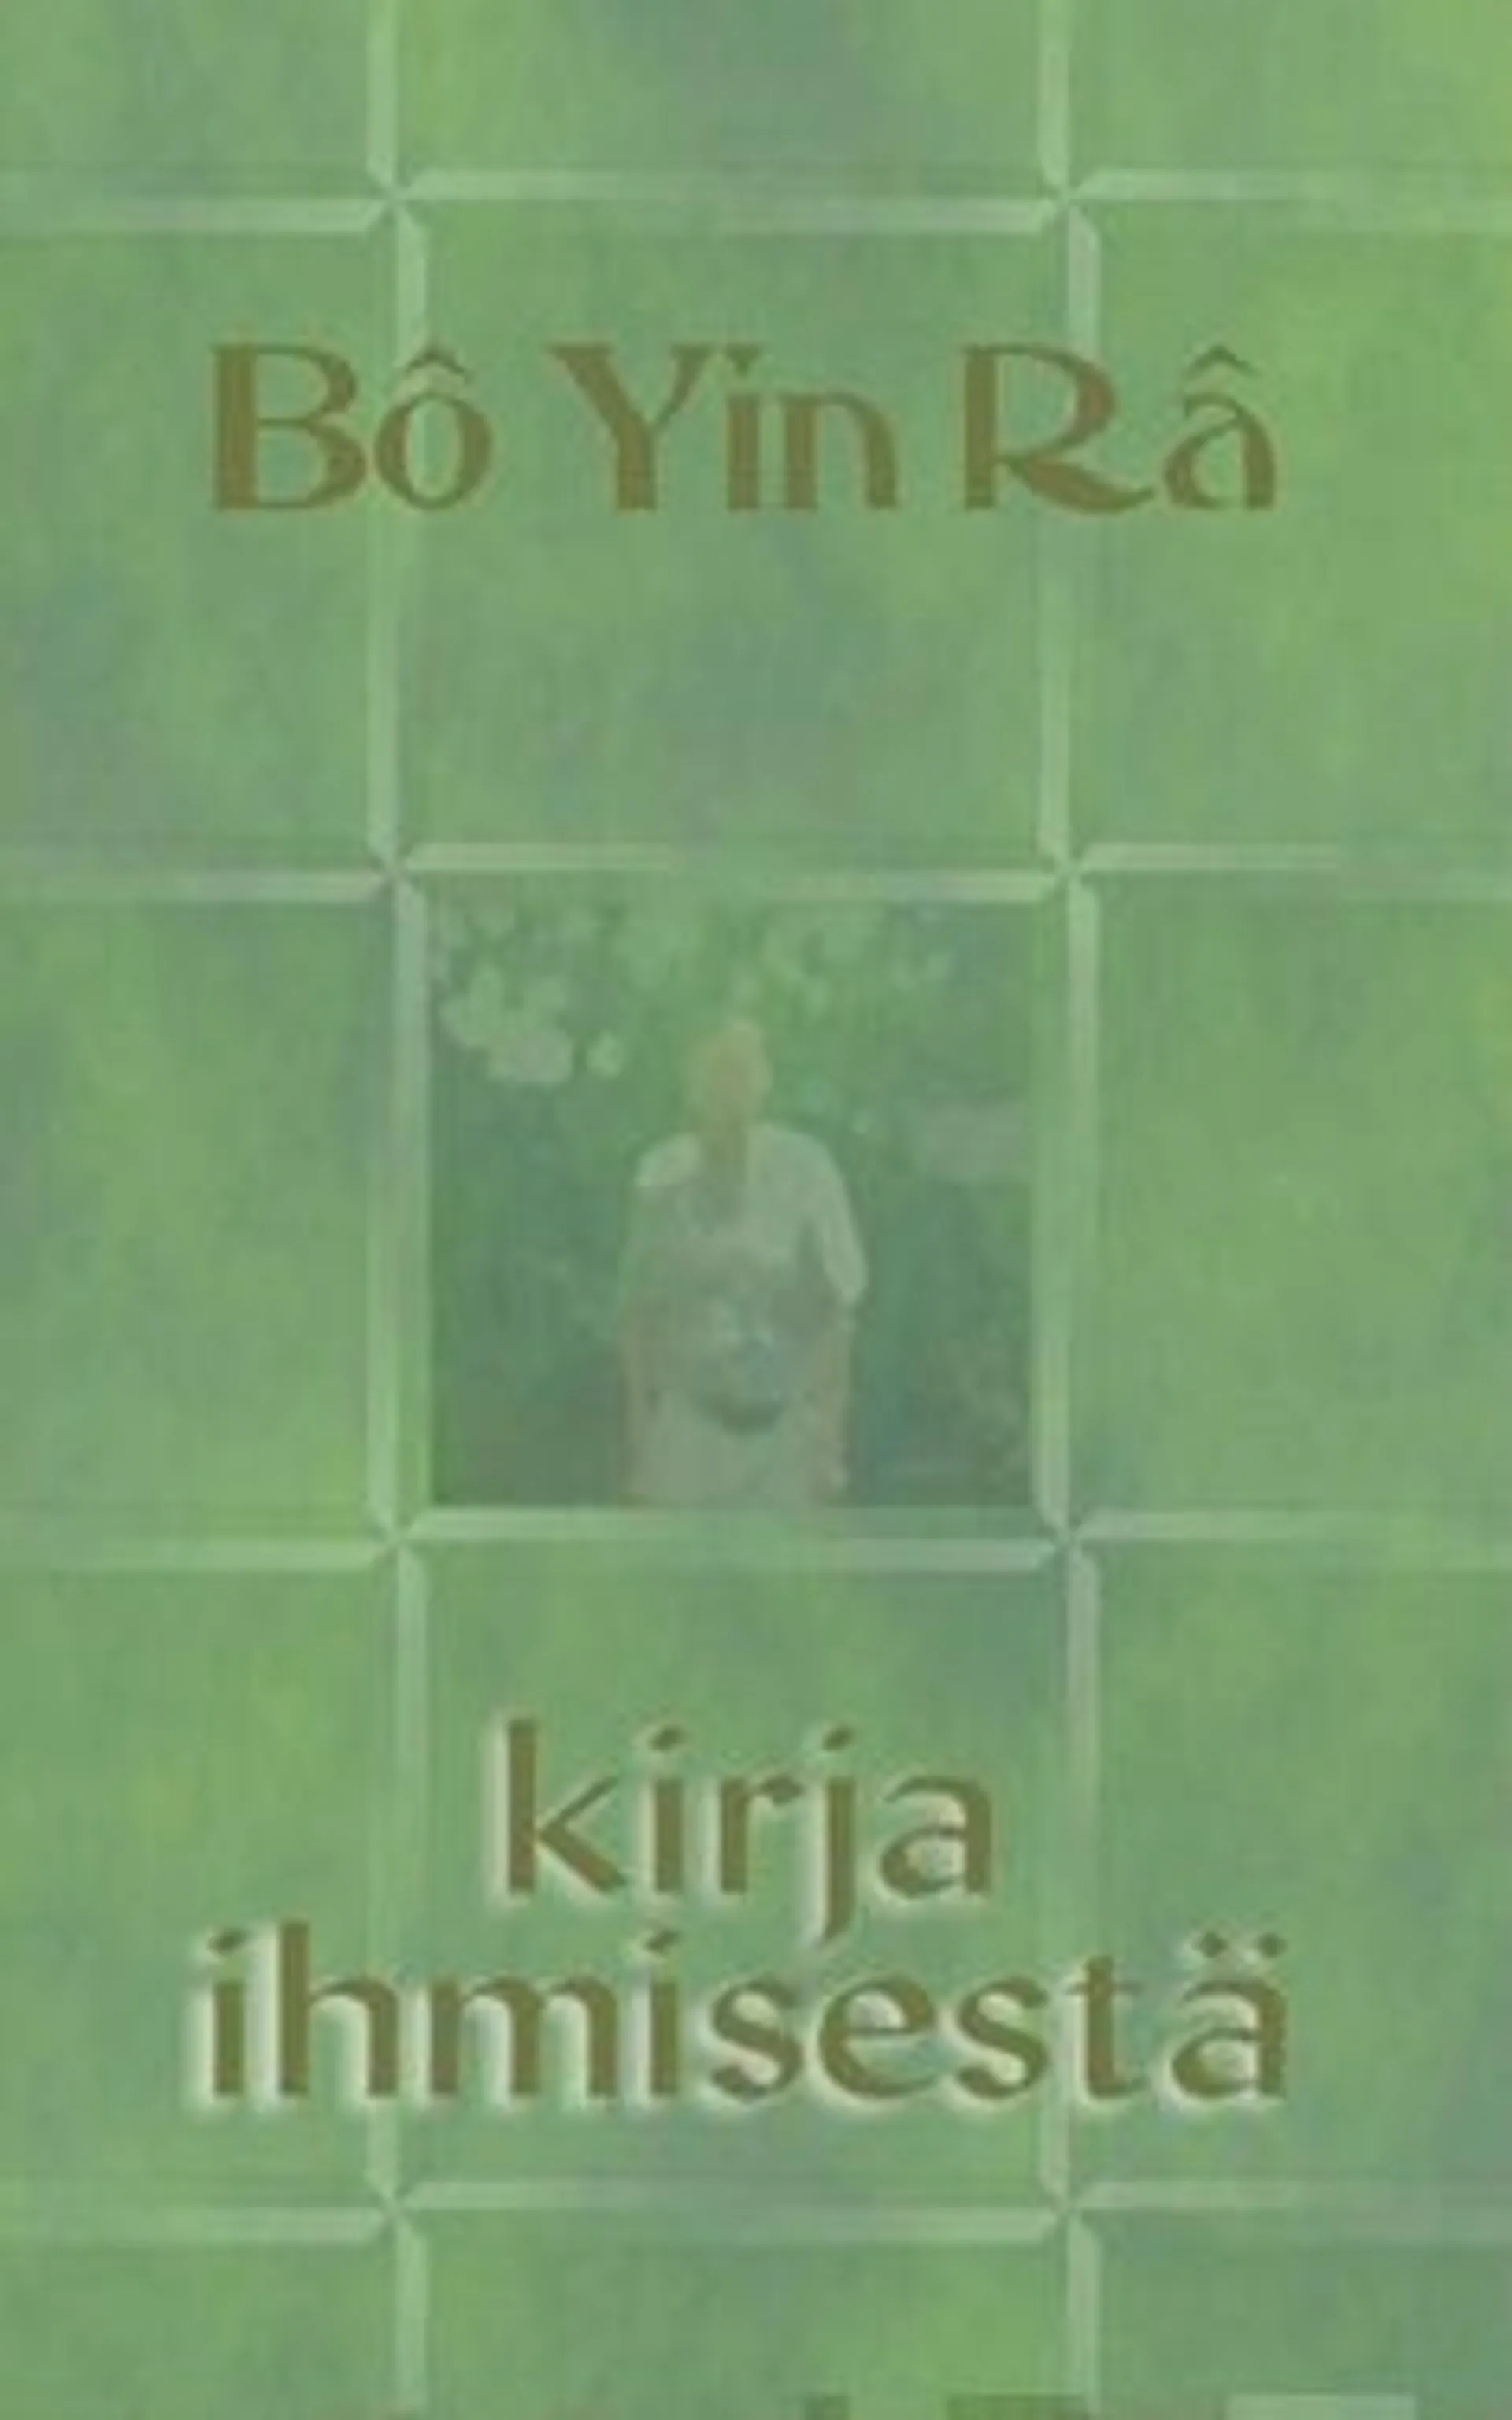 Bo Yin Ra, Kirja ihmisestä